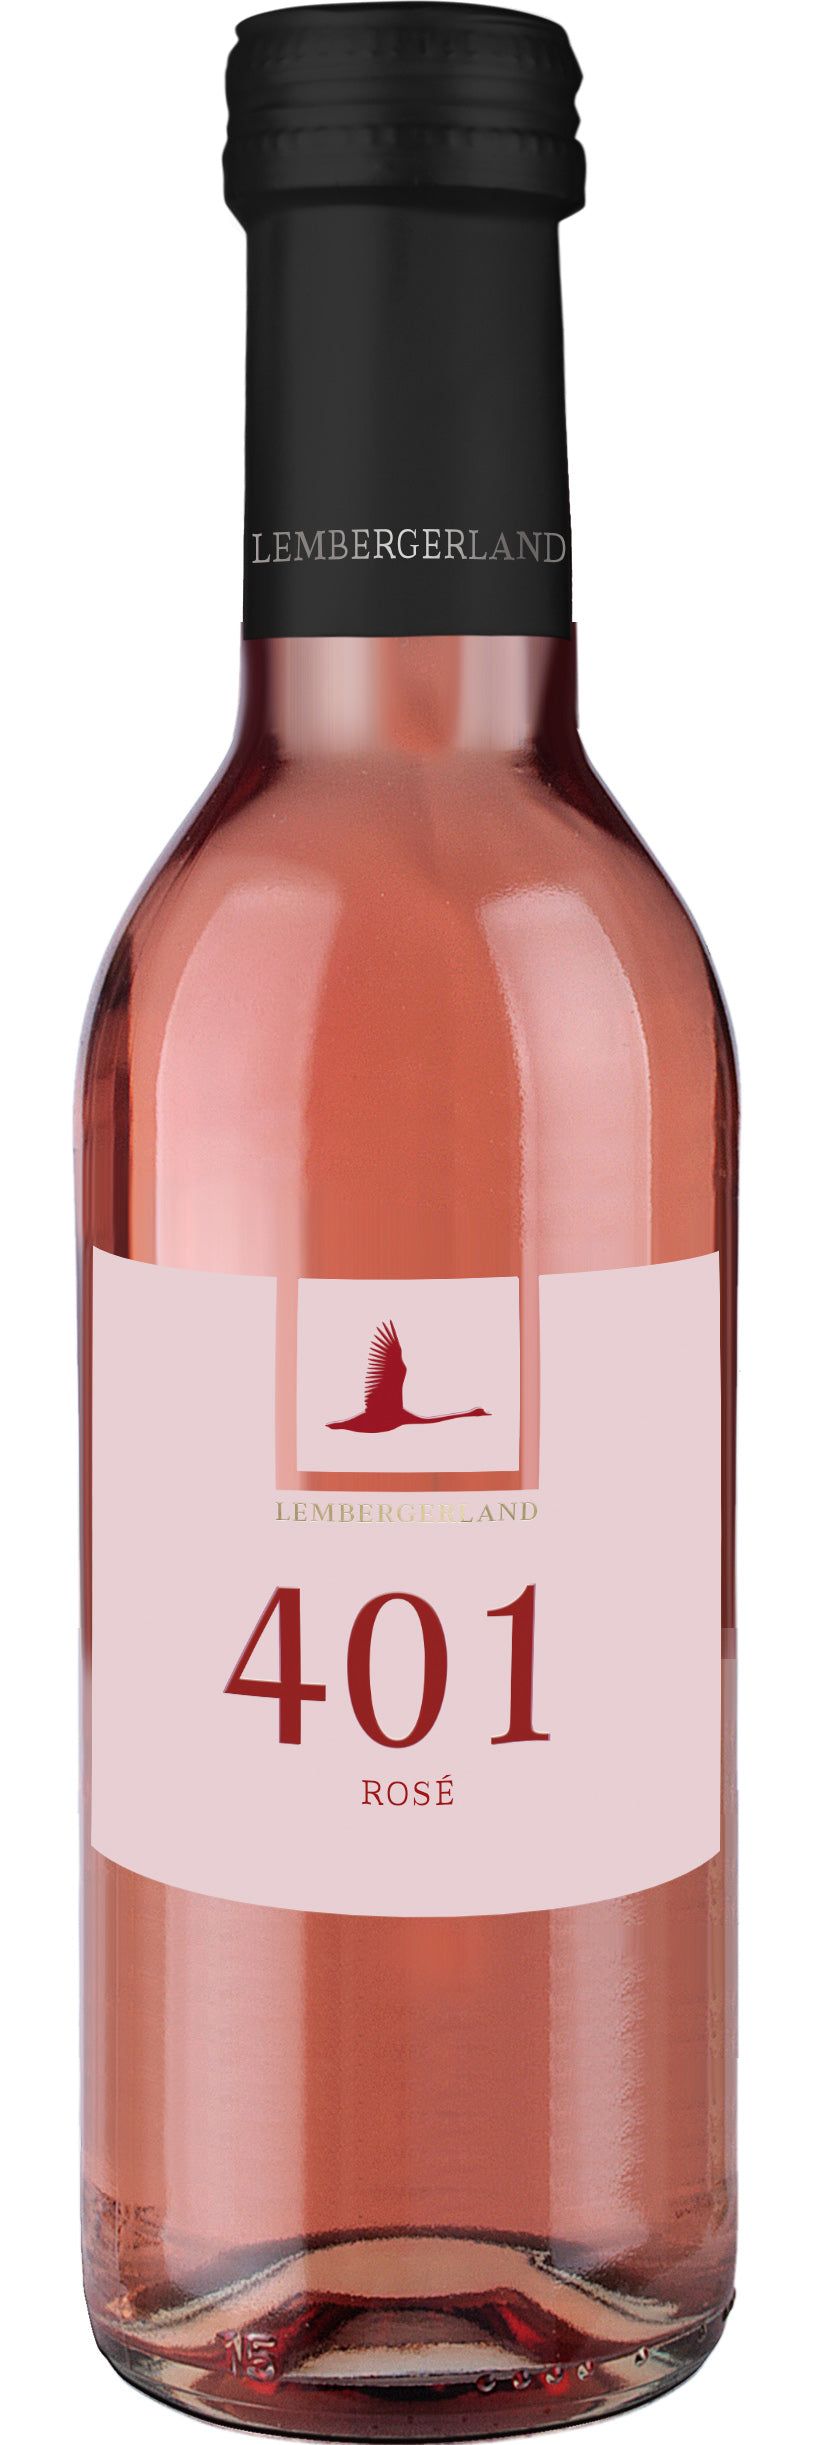 401 Rosé trocken